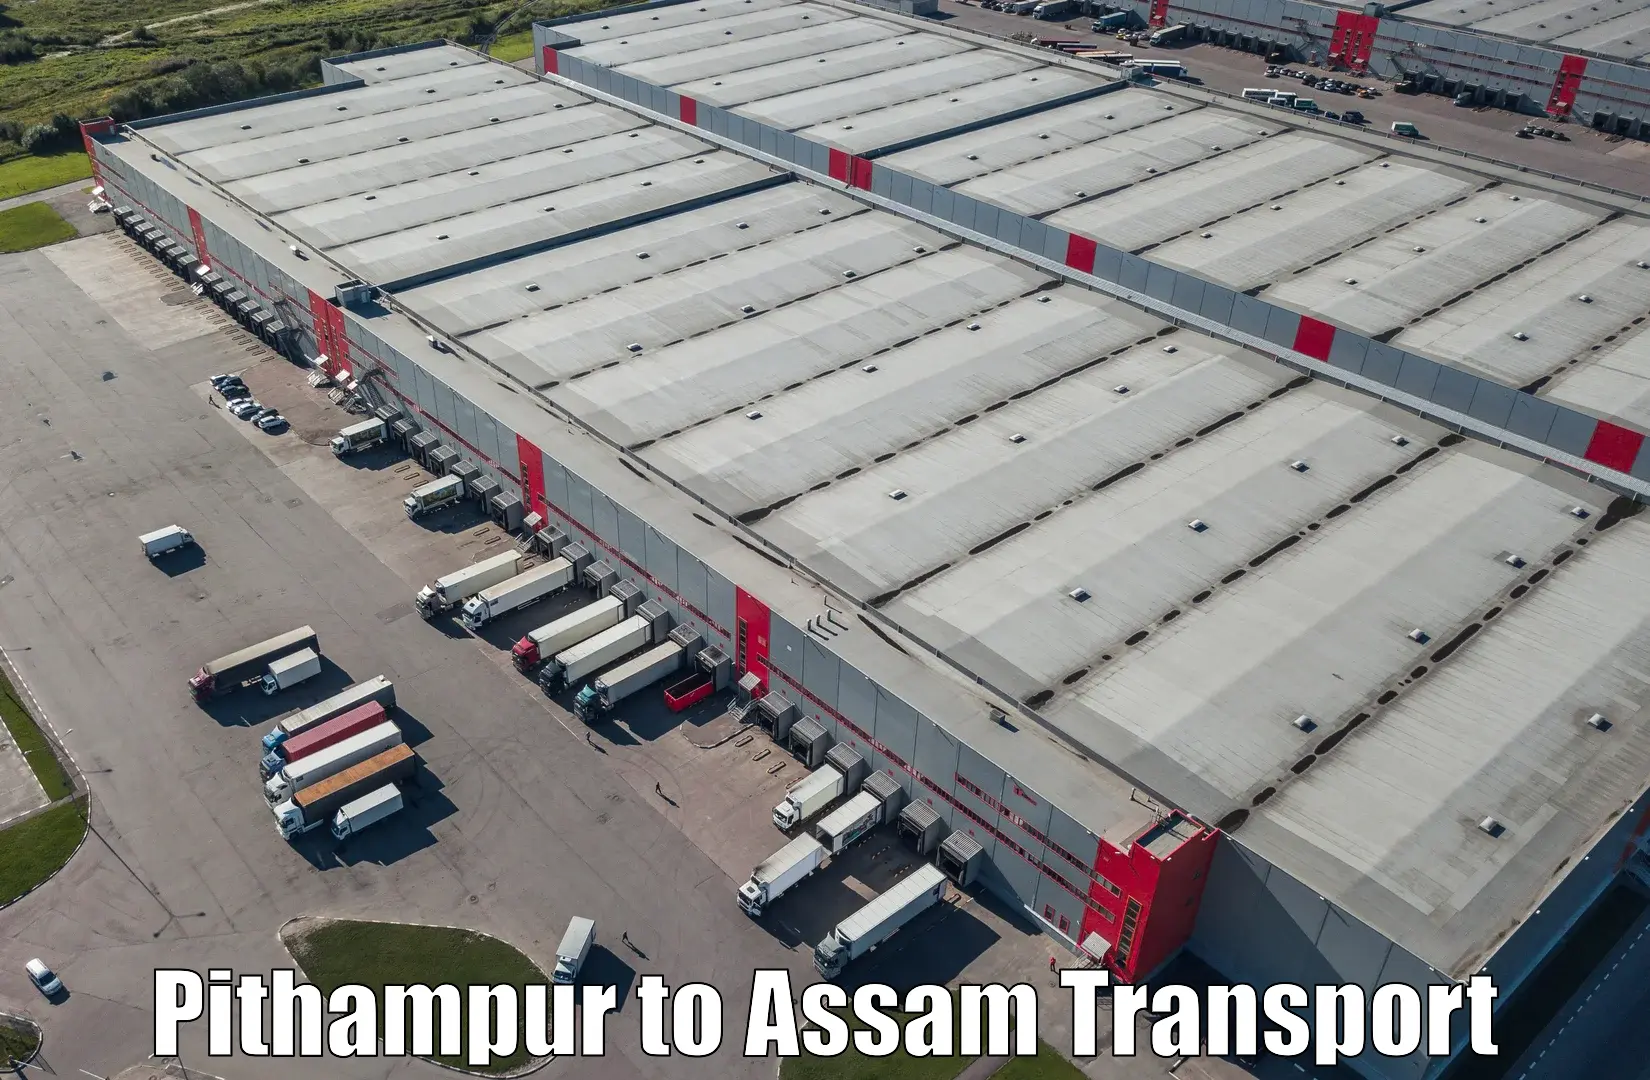 Furniture transport service Pithampur to Dhemaji